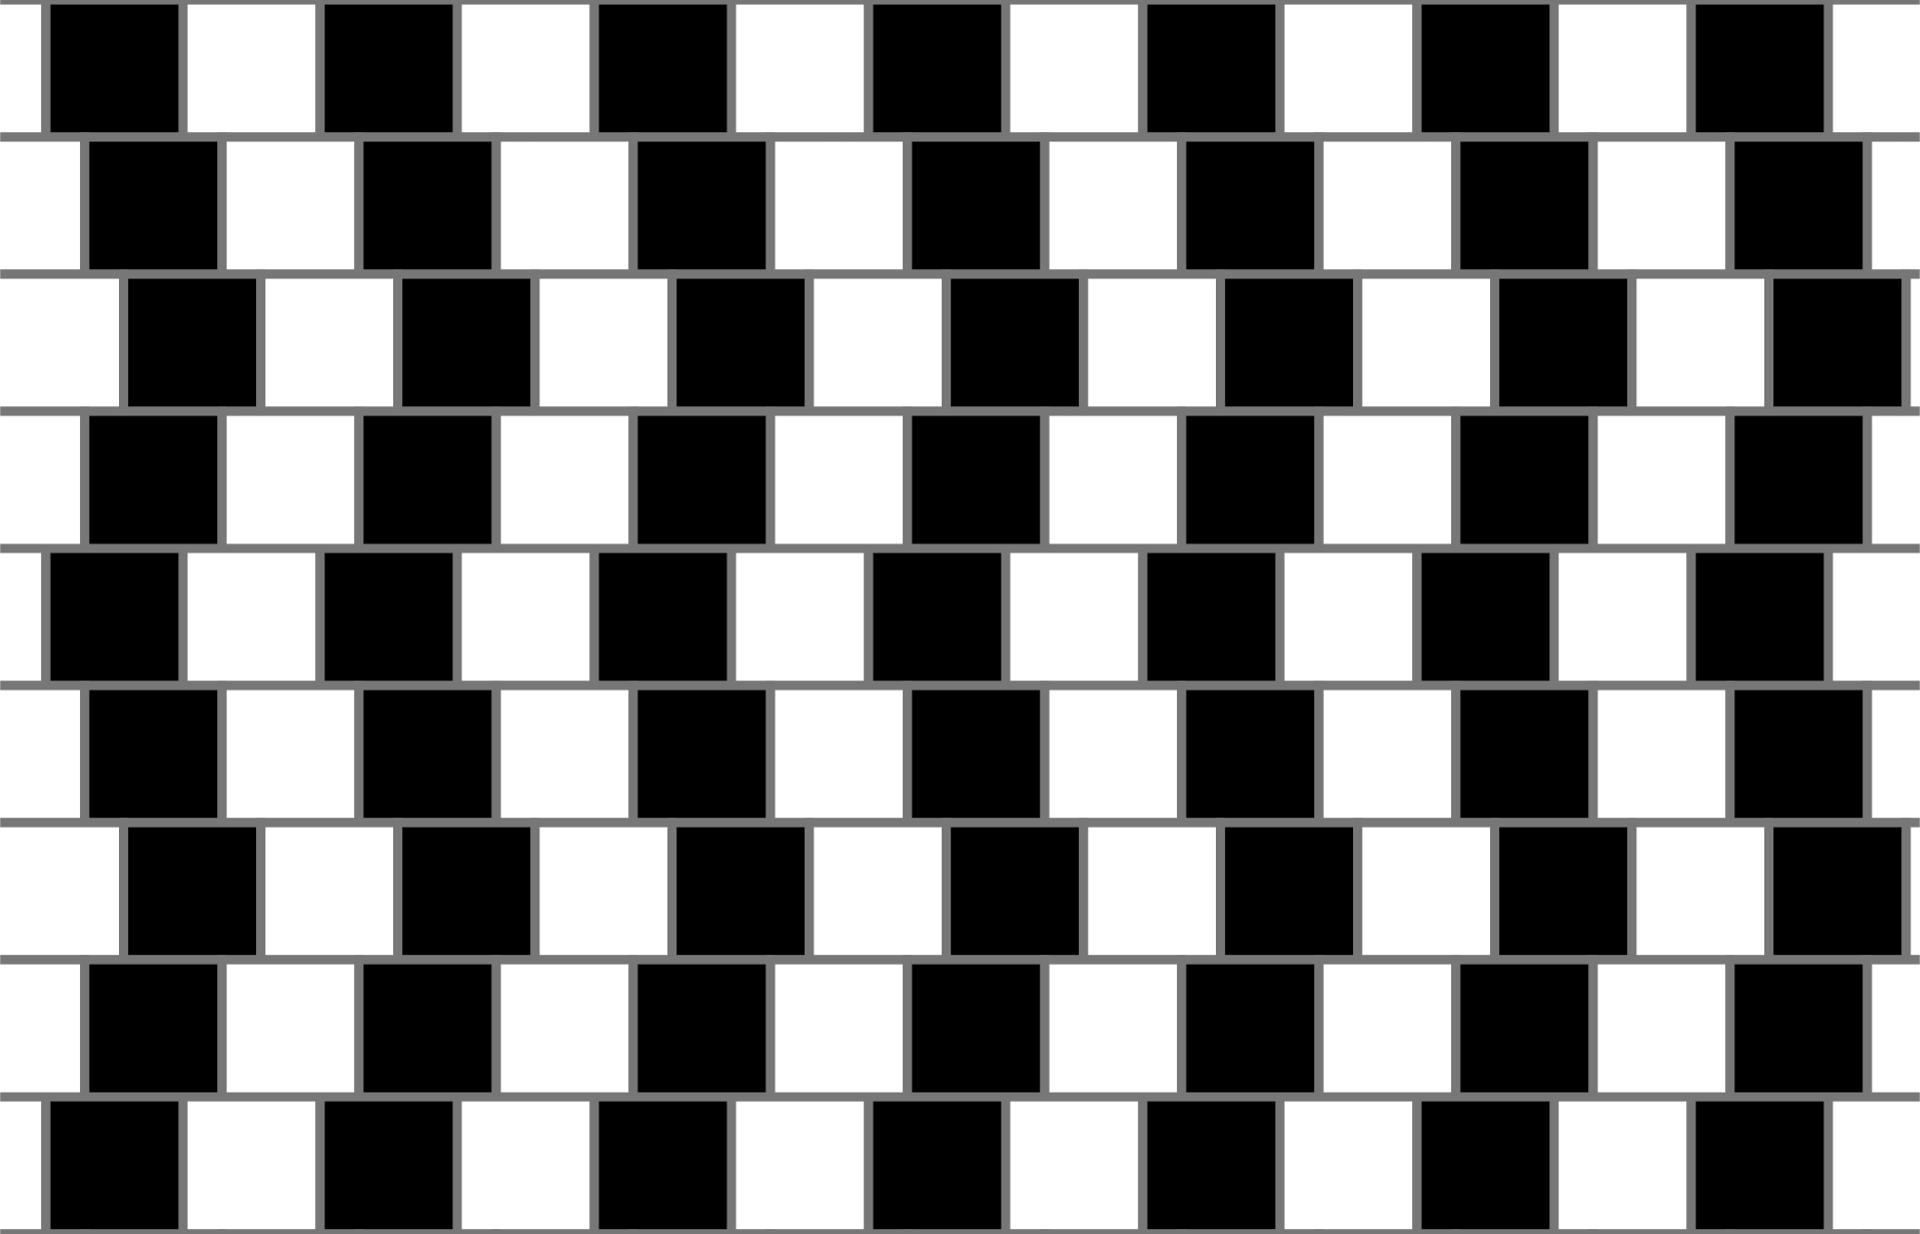 Ilustracja przedstawia poziome pasy zbudowane naprzemiennie z białych i czarnych kwadratów. Pasy przylegają do siebie. Kwadraty w kolejnych pasach, rzędach są nieznacznie względem siebie przesunięte.   